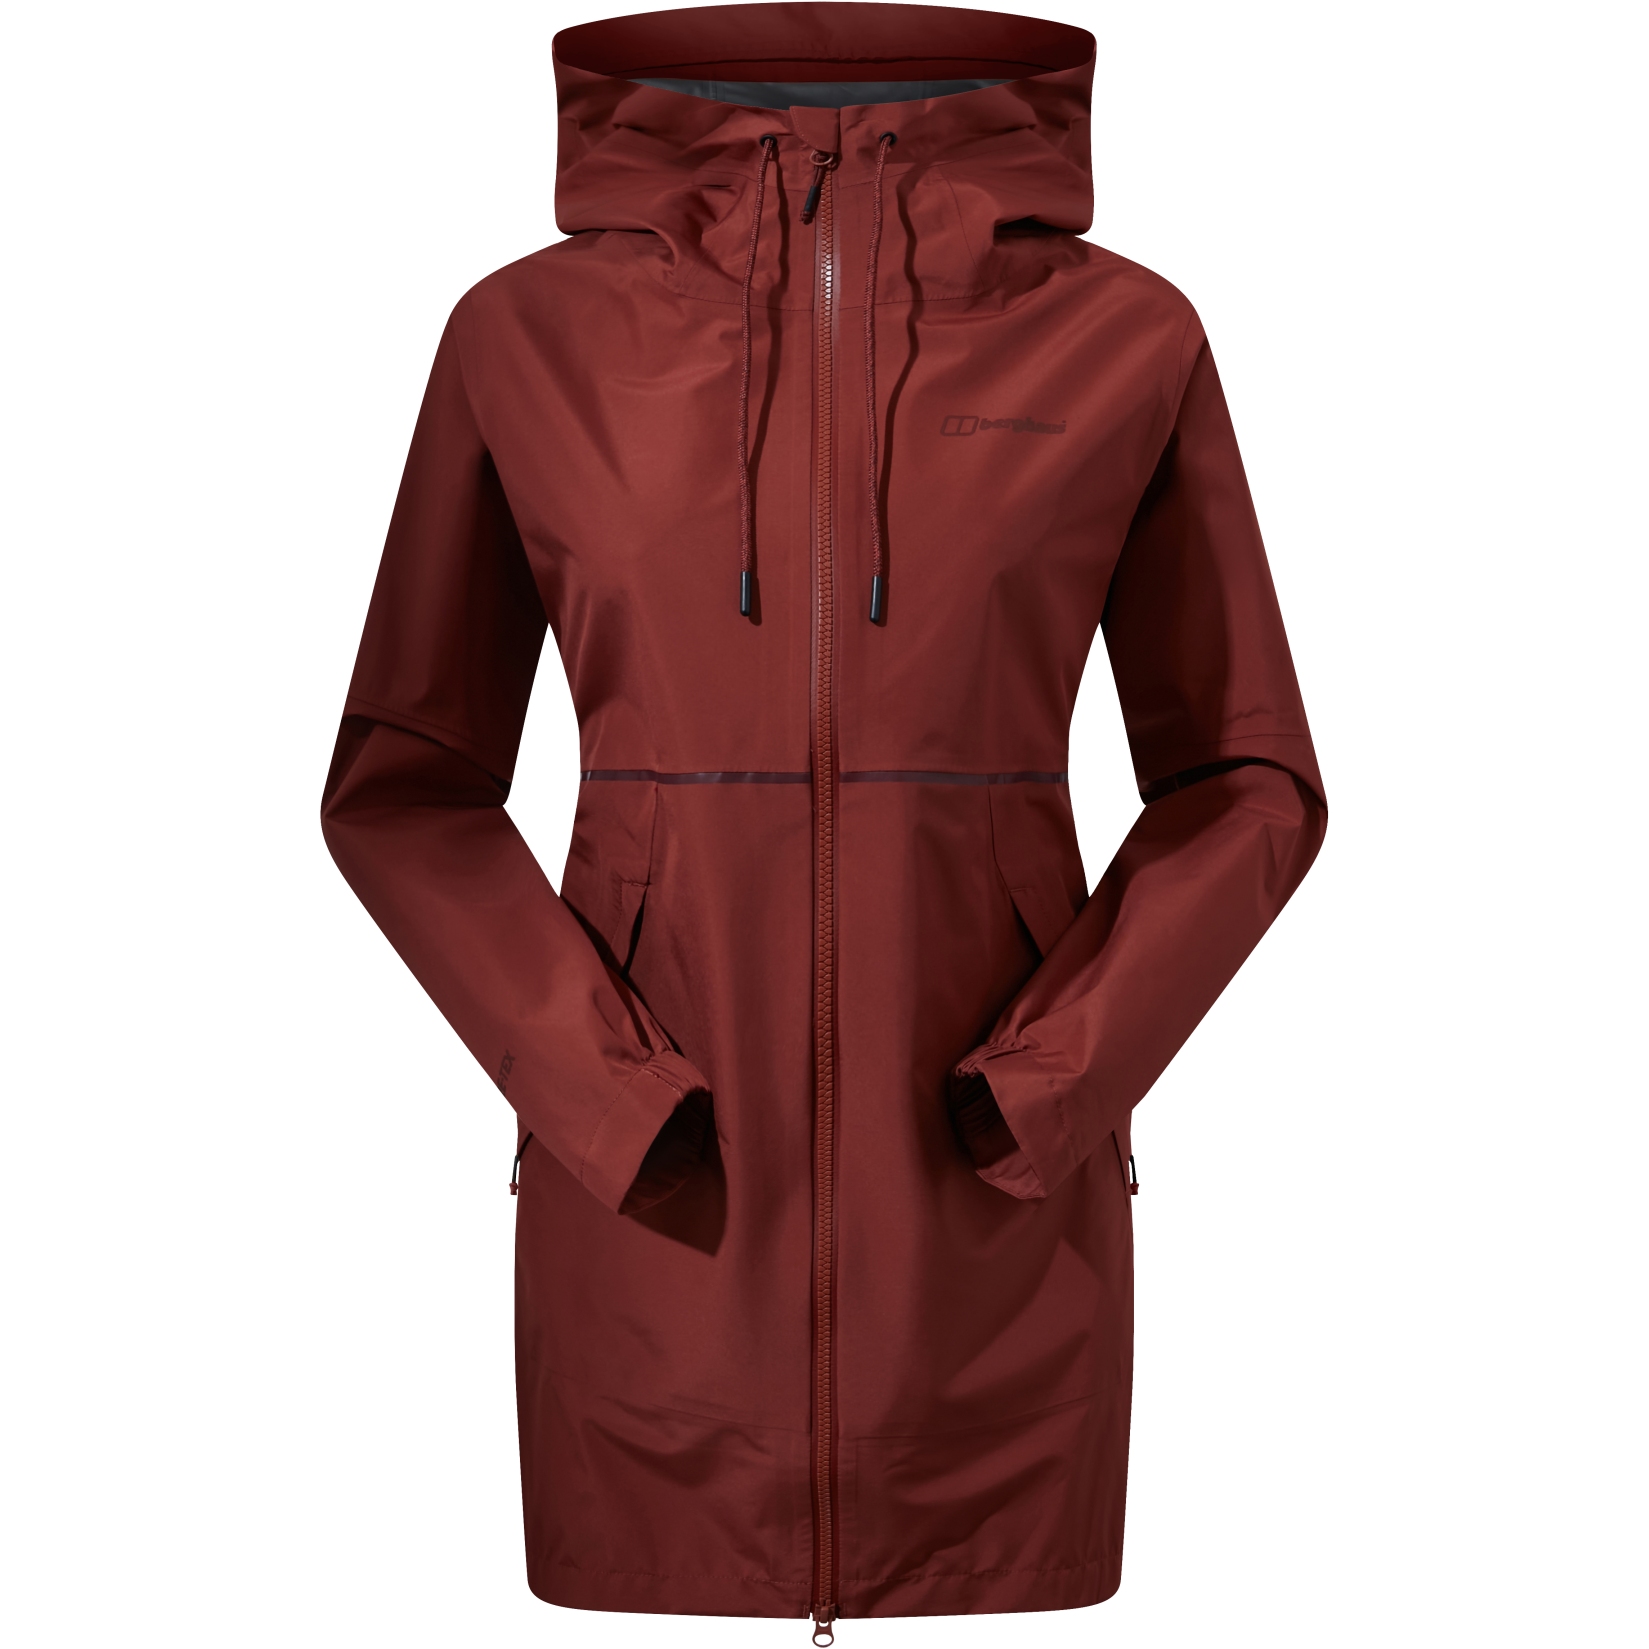 Produktbild von Berghaus Rothley GORE-TEX Wasserdichte Jacke Damen - Red Rust